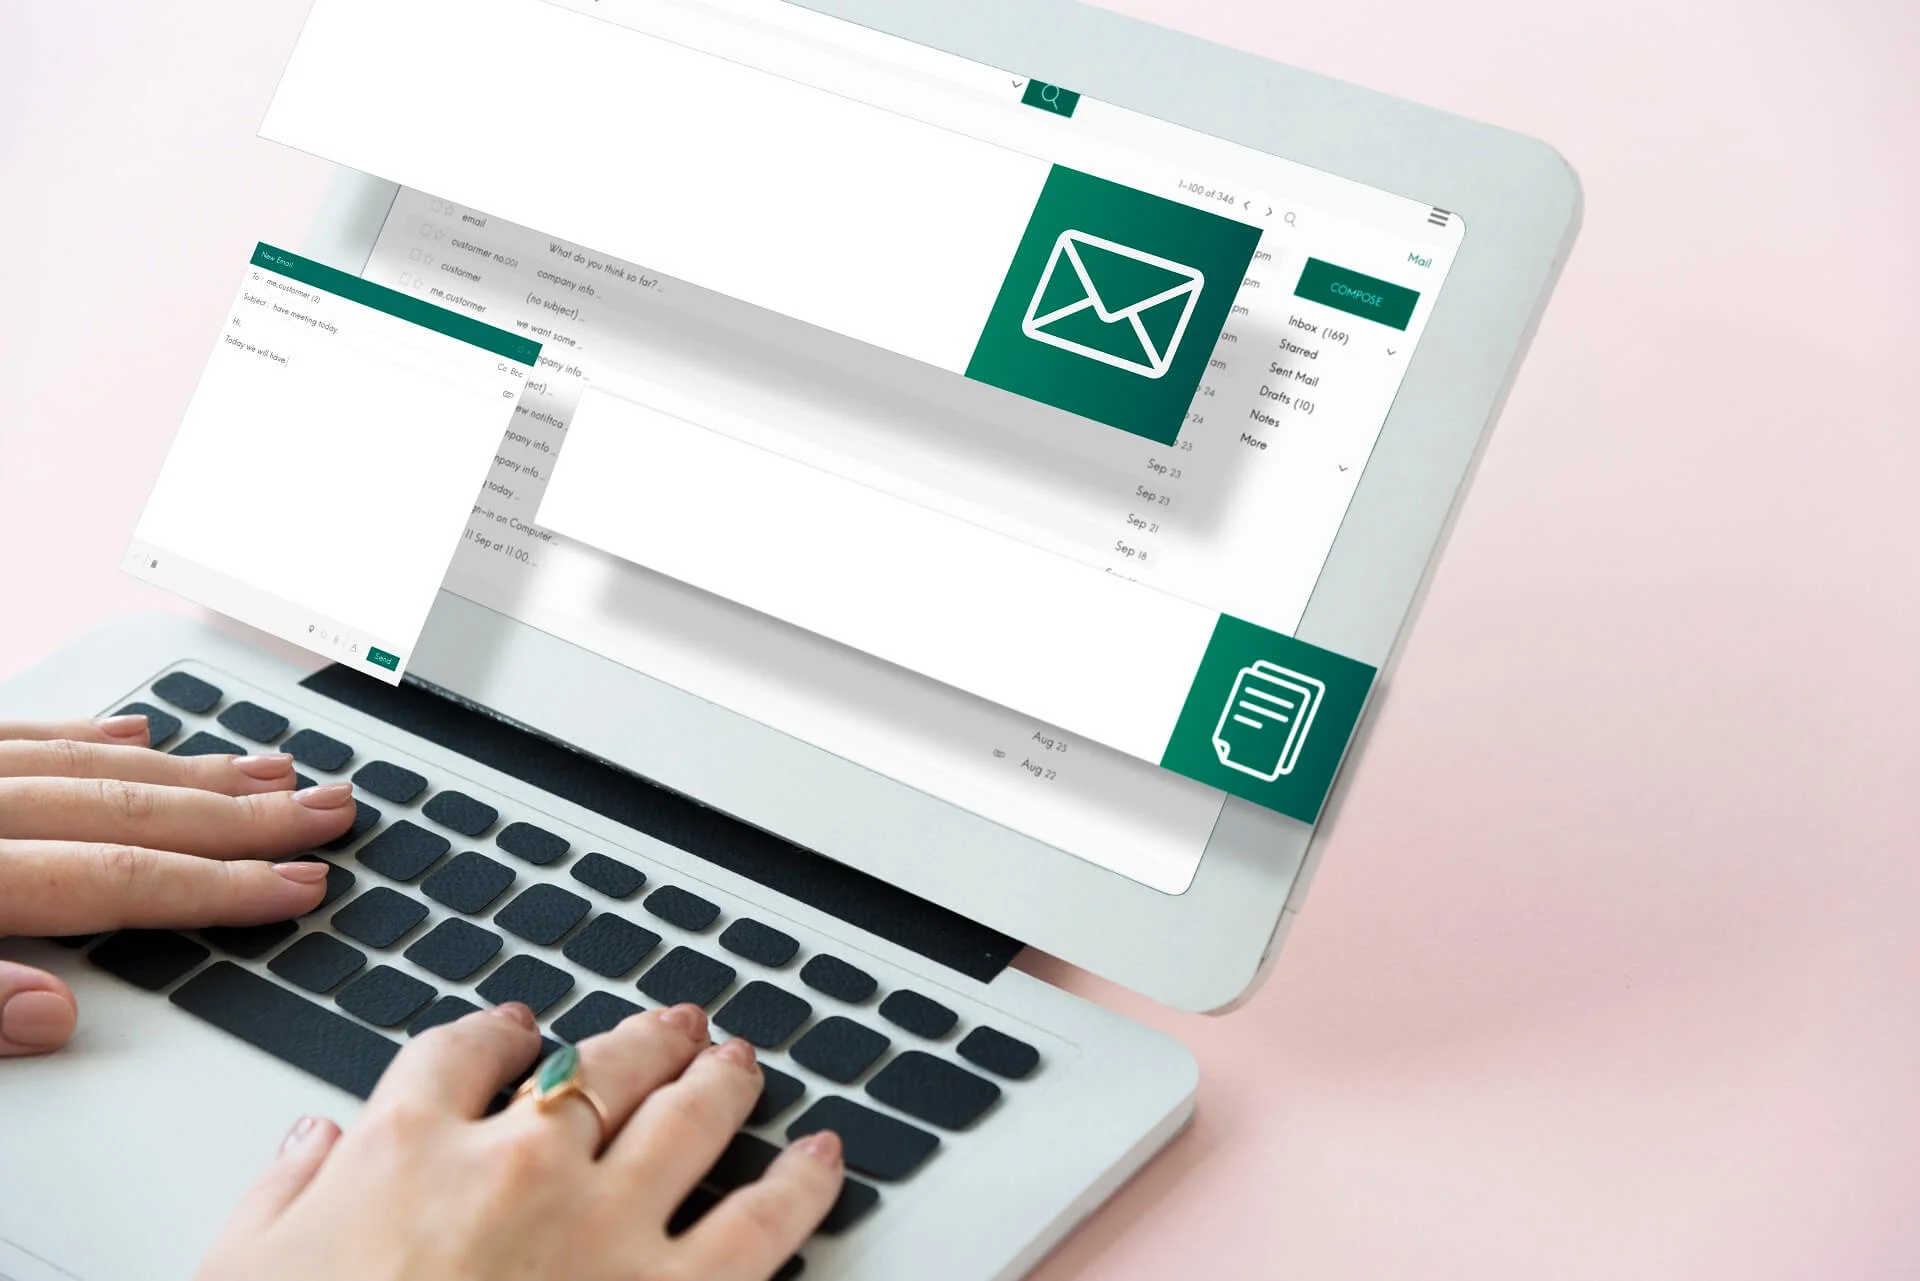 البريد الإلكتروني (البريد الإلكتروني أو البريد الإلكتروني) هو أفضل طريقة لتبادل الرسائل بين الأشخاص الذين يستخدمون الأجهزة الإلكترونية